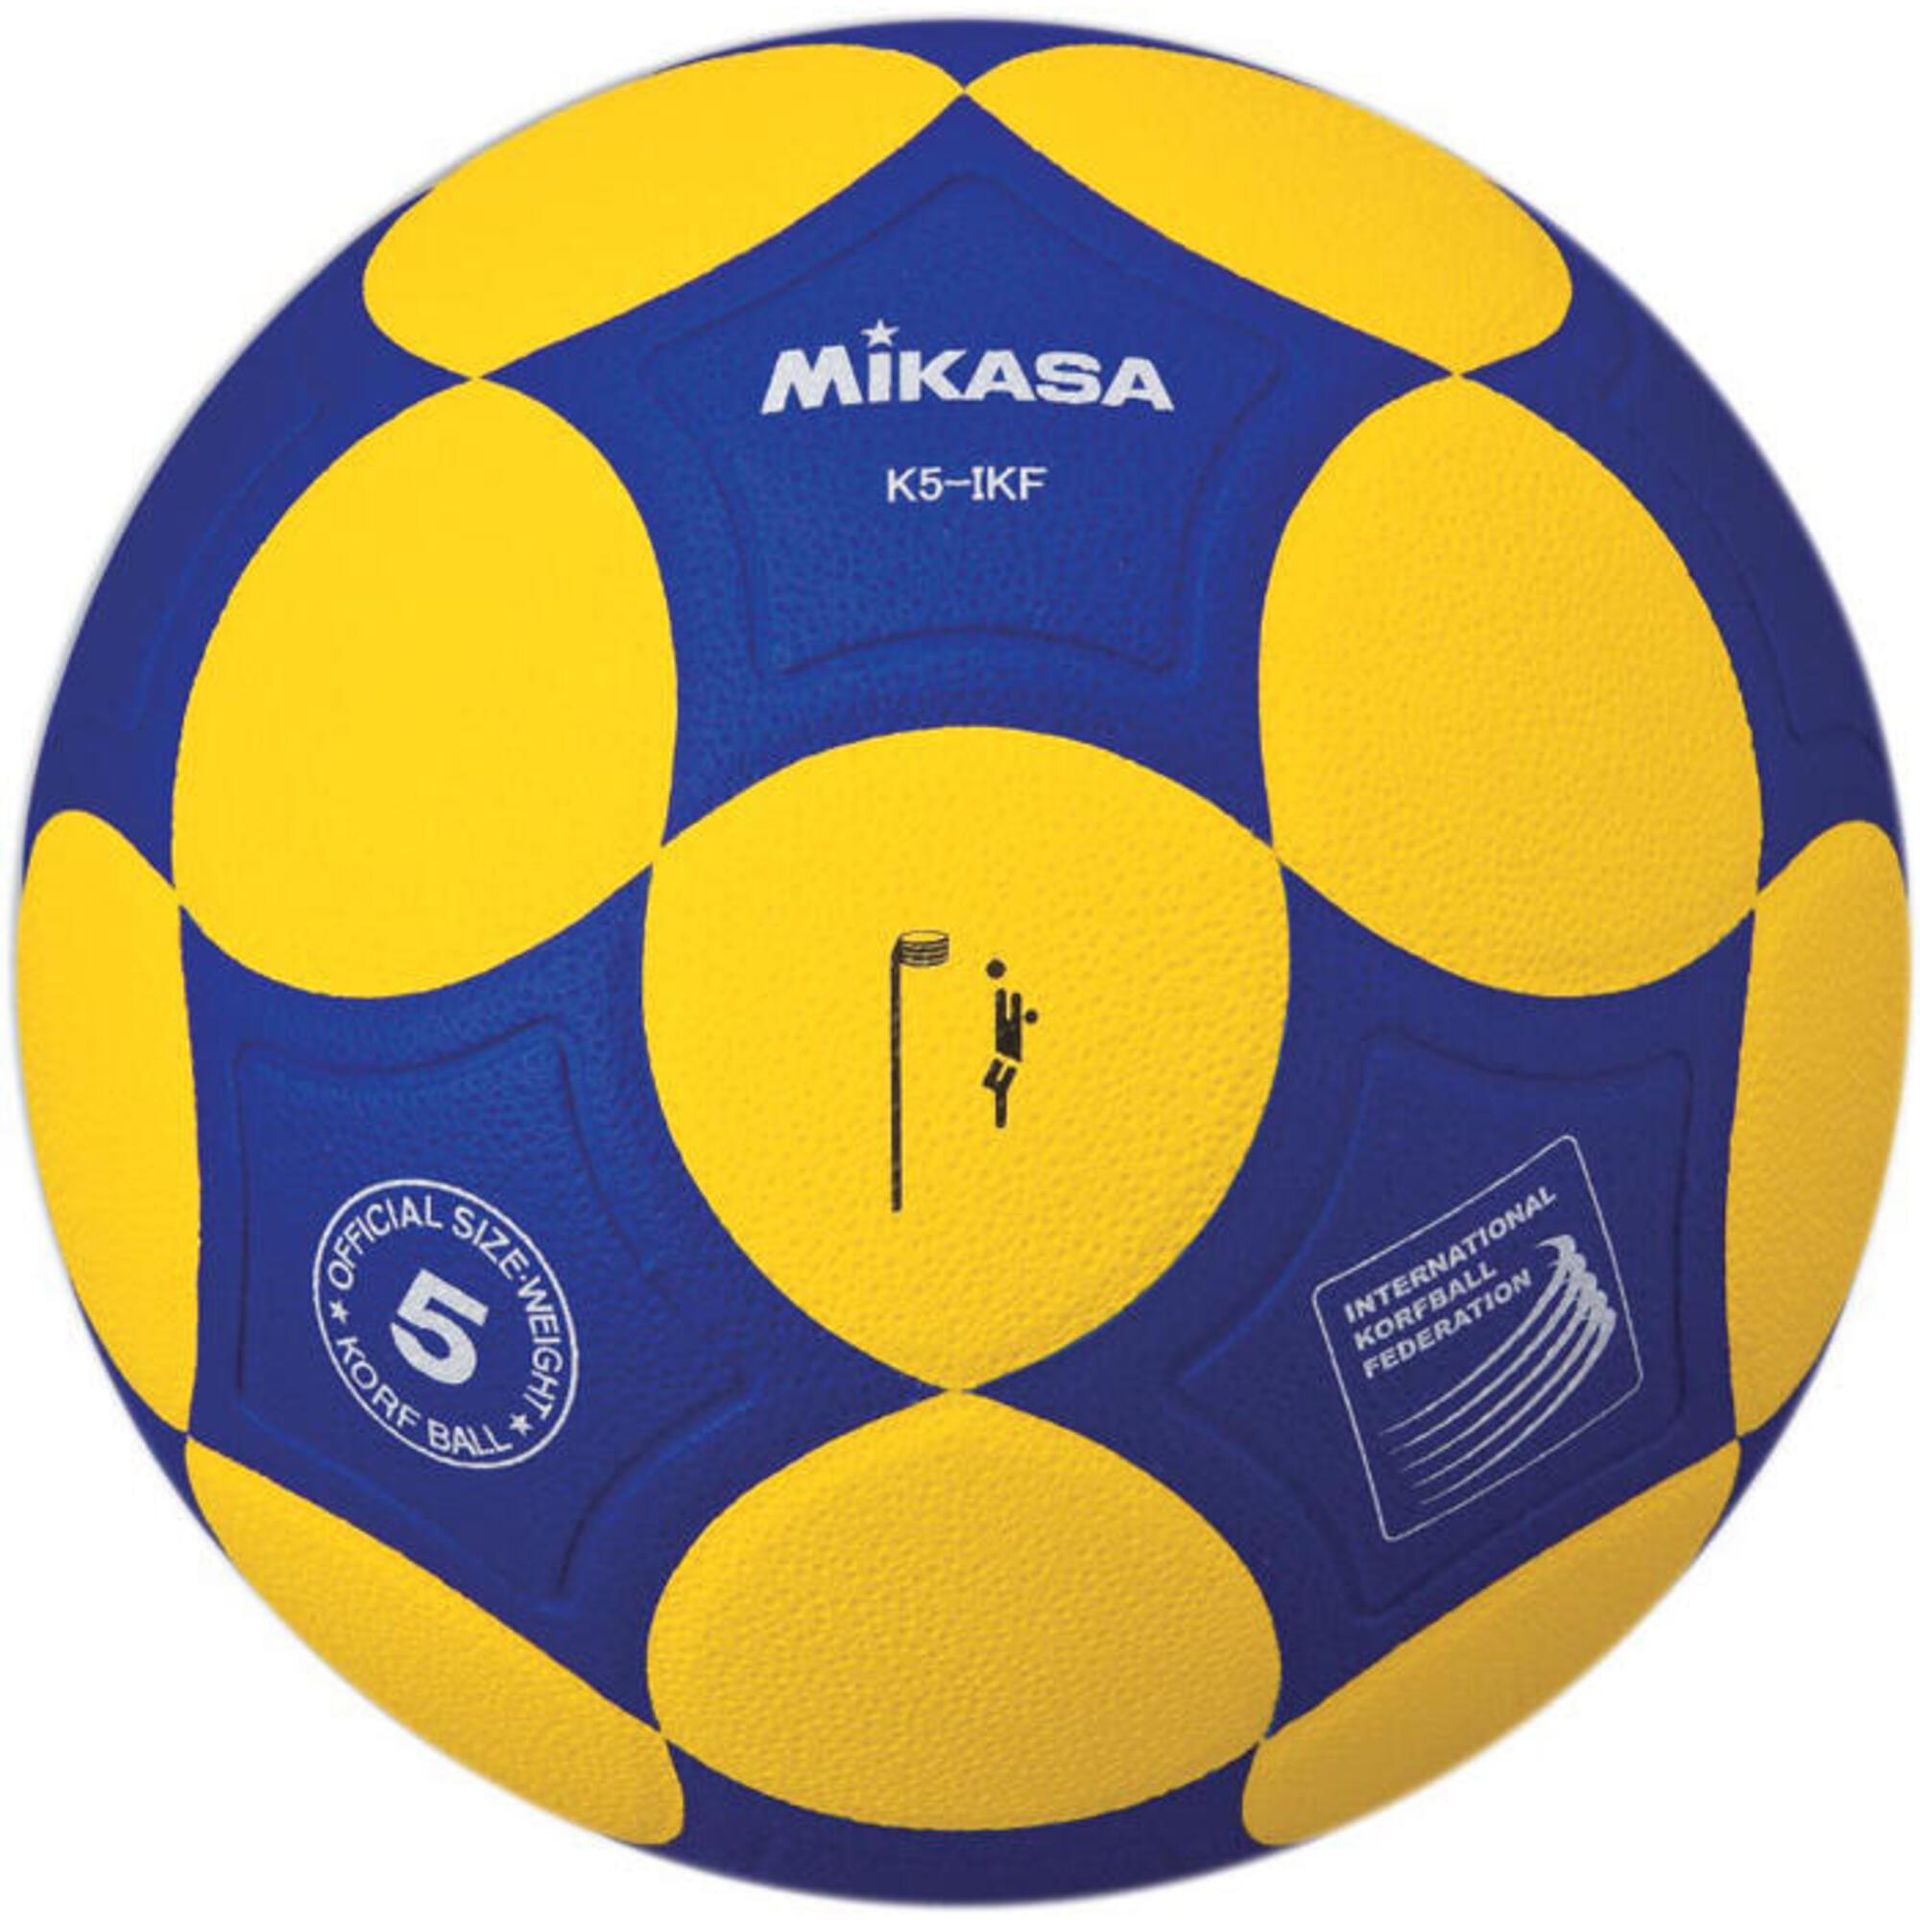 Korfball Pro K5-IKF